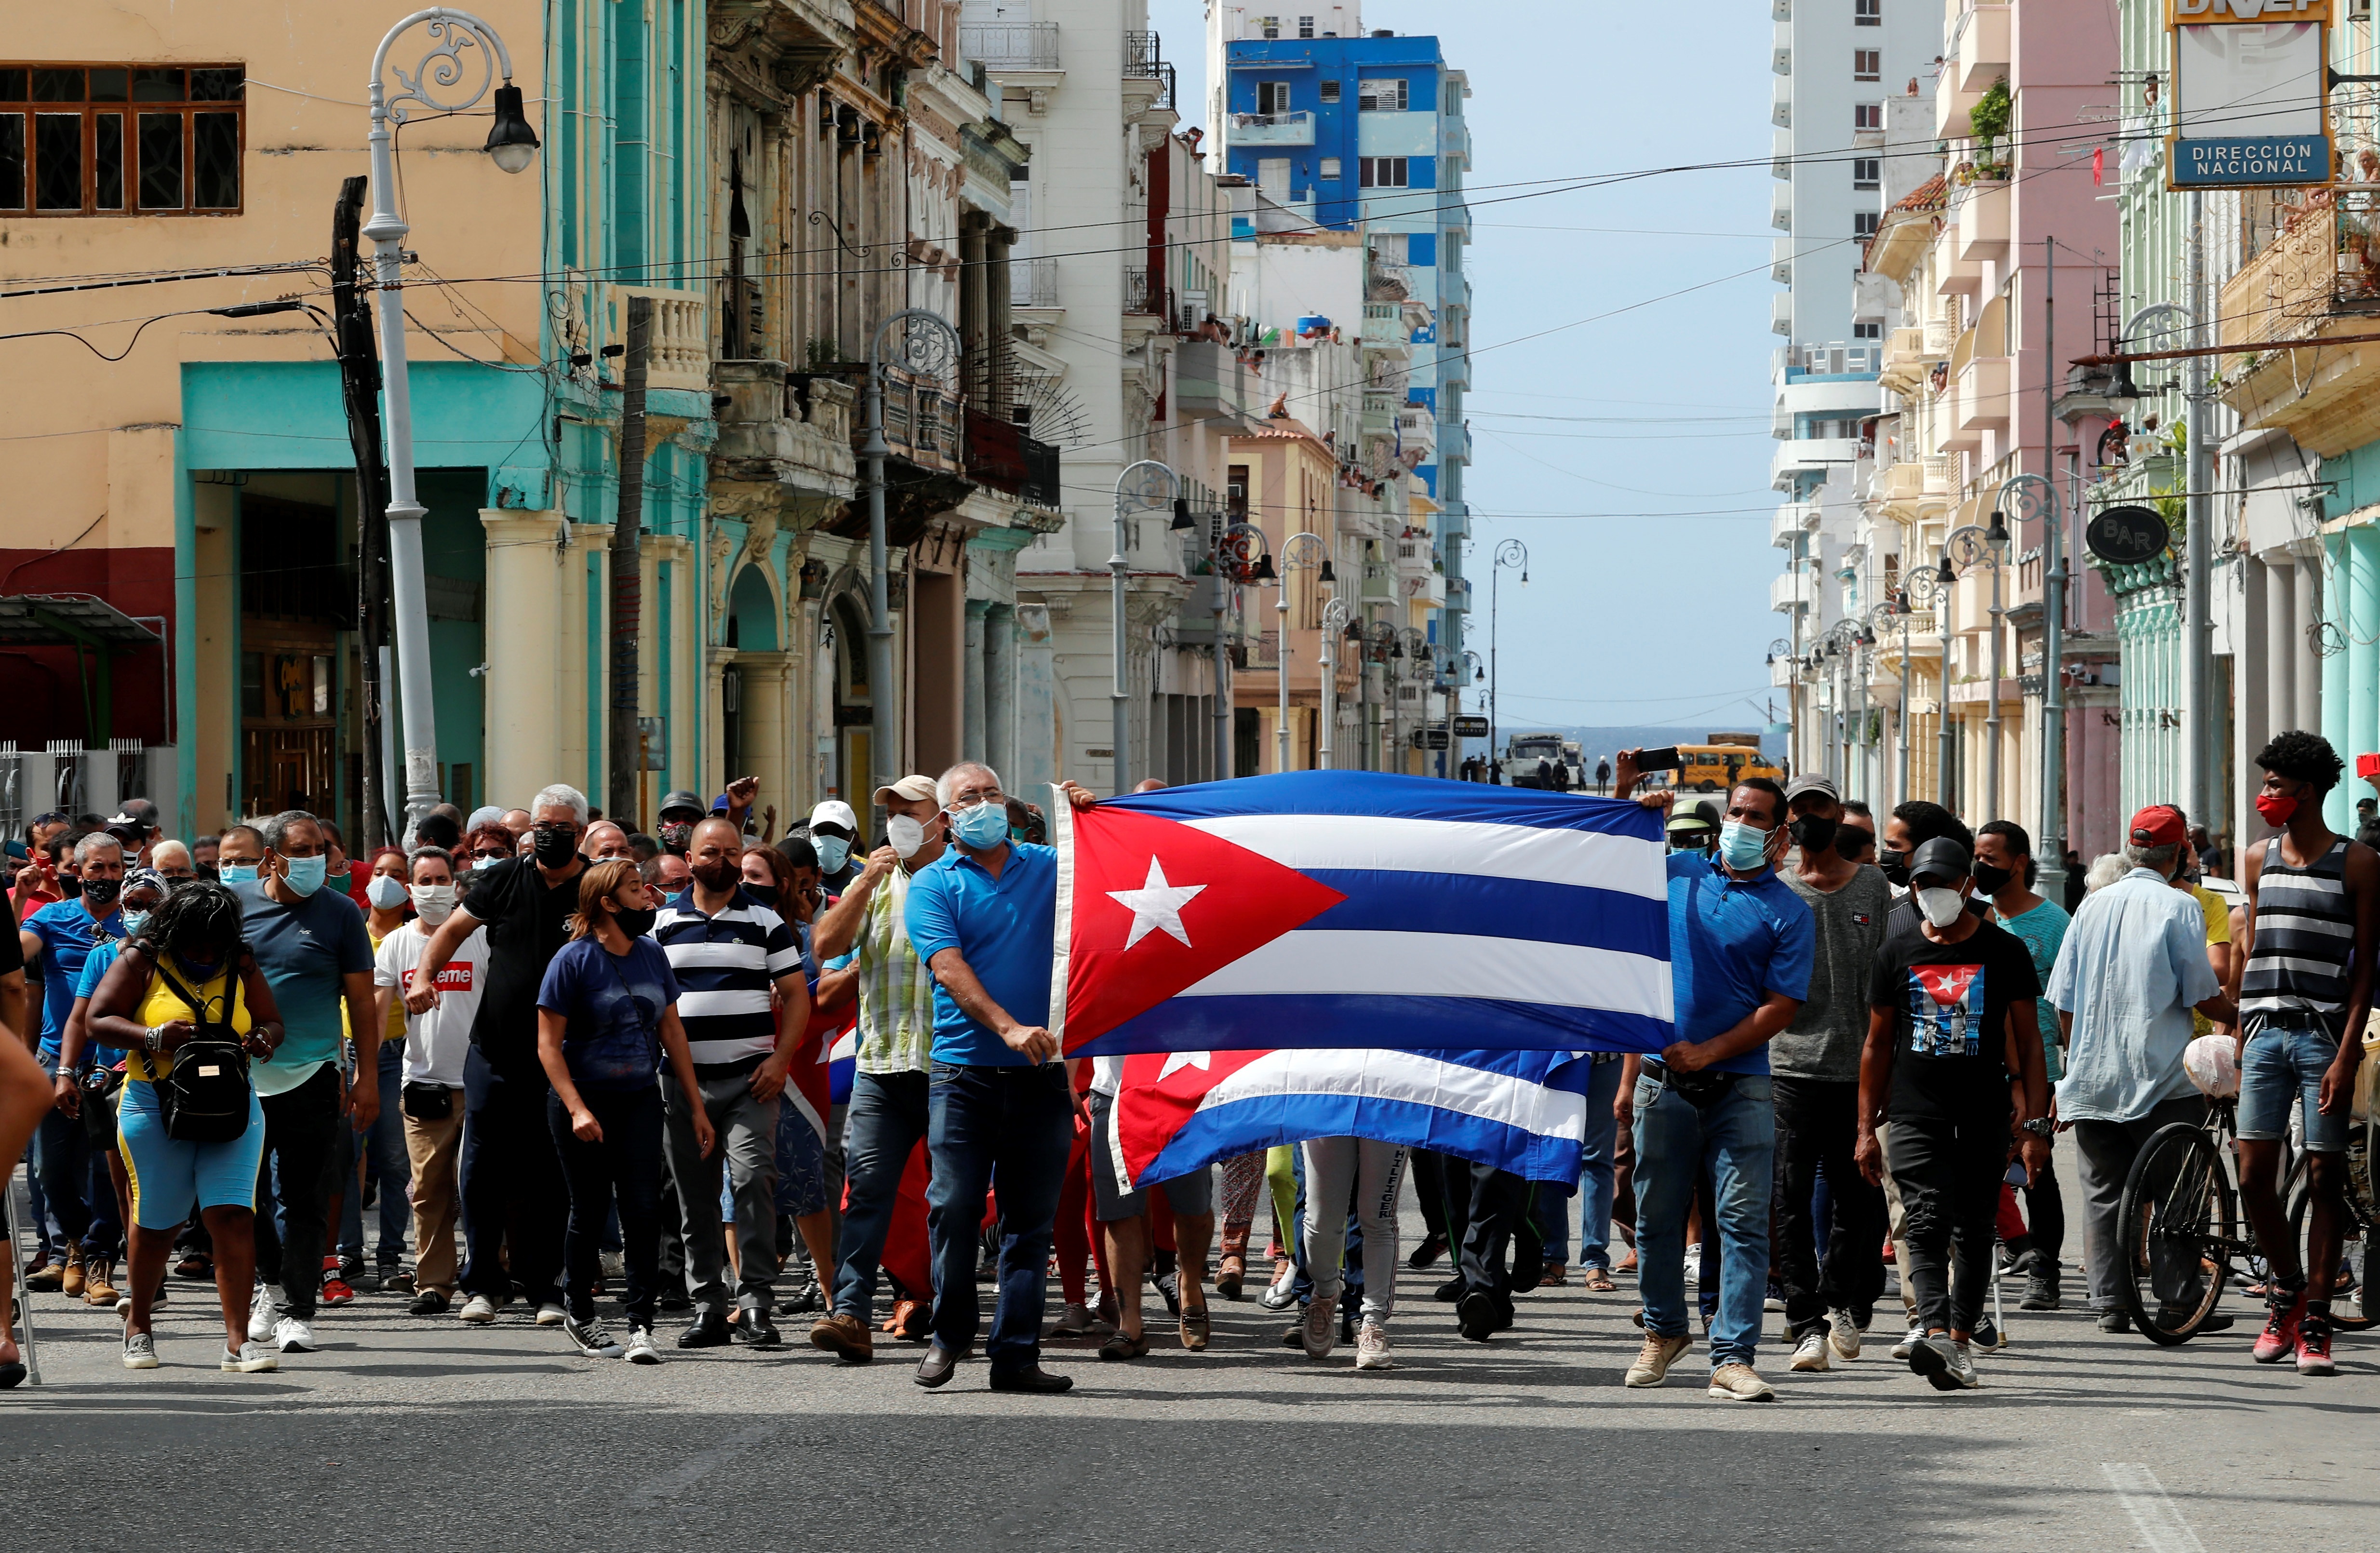 Fotografía de archivo fechada el 11 de julio de 2021. Un grupo de personas responden a manifestantes frente al capitolio de Cuba en La Habana, en una fotografía de archivo. EFE/Ernesto Mastrascusa/Archivo
